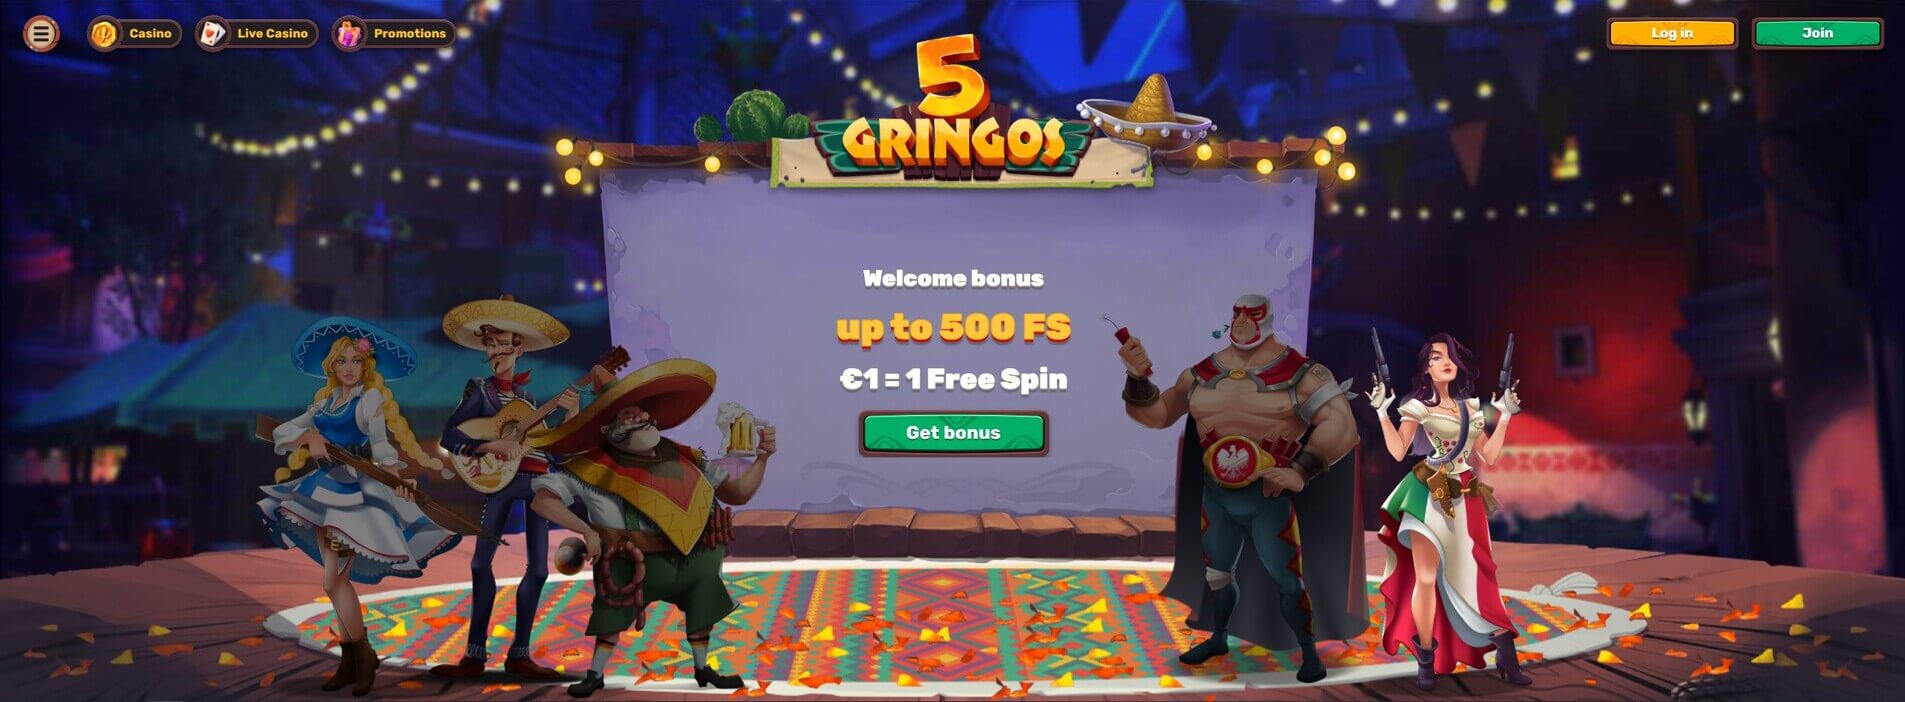 5Gringos.com - Website Review